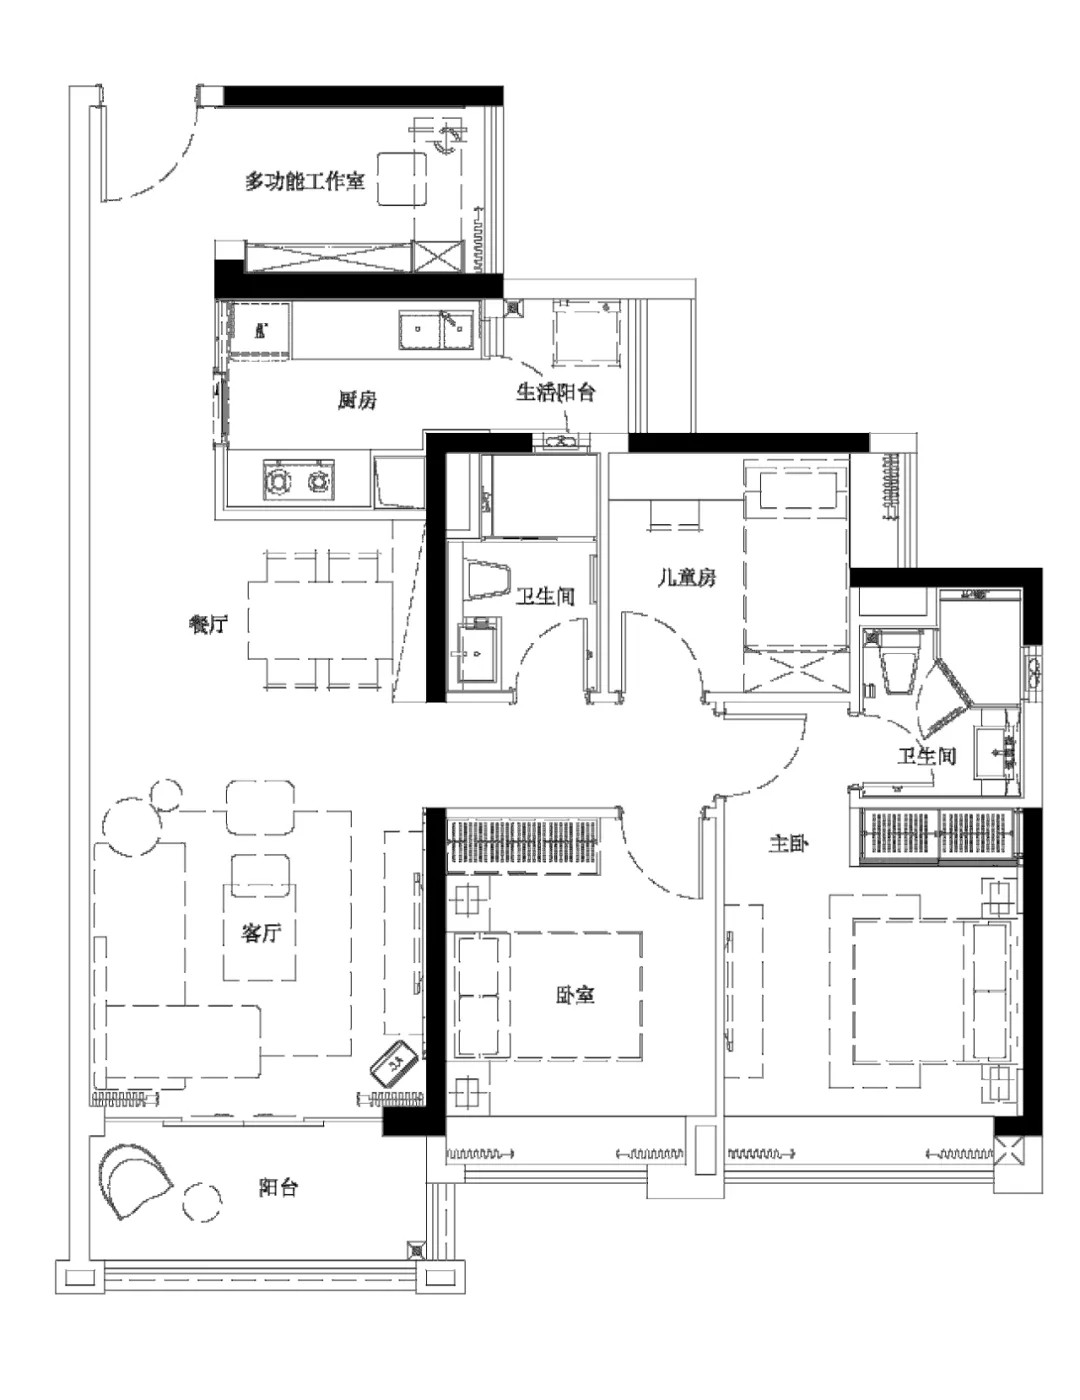 125现代三房装修效果图,原·生活装修案例效果图-美广网(图1)